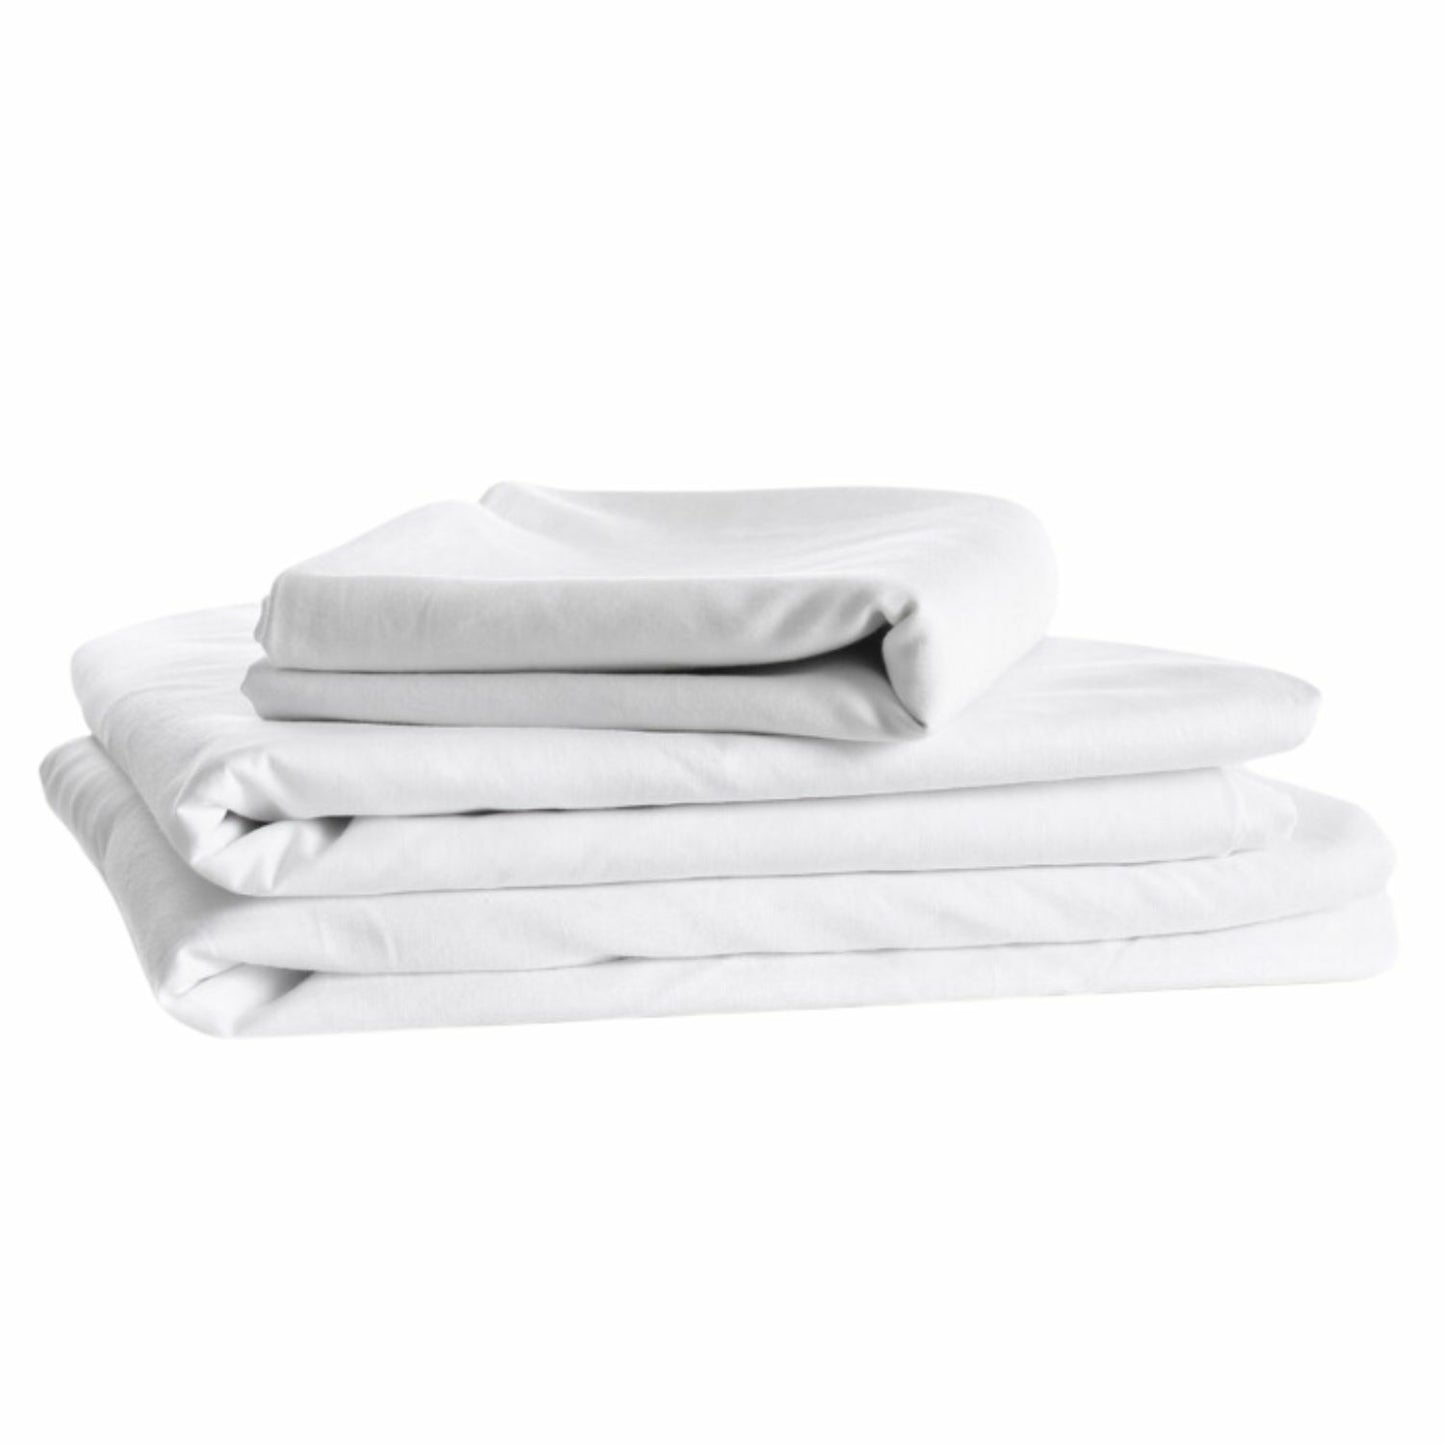 Icare Adjustable Bed Sheet Sets - White